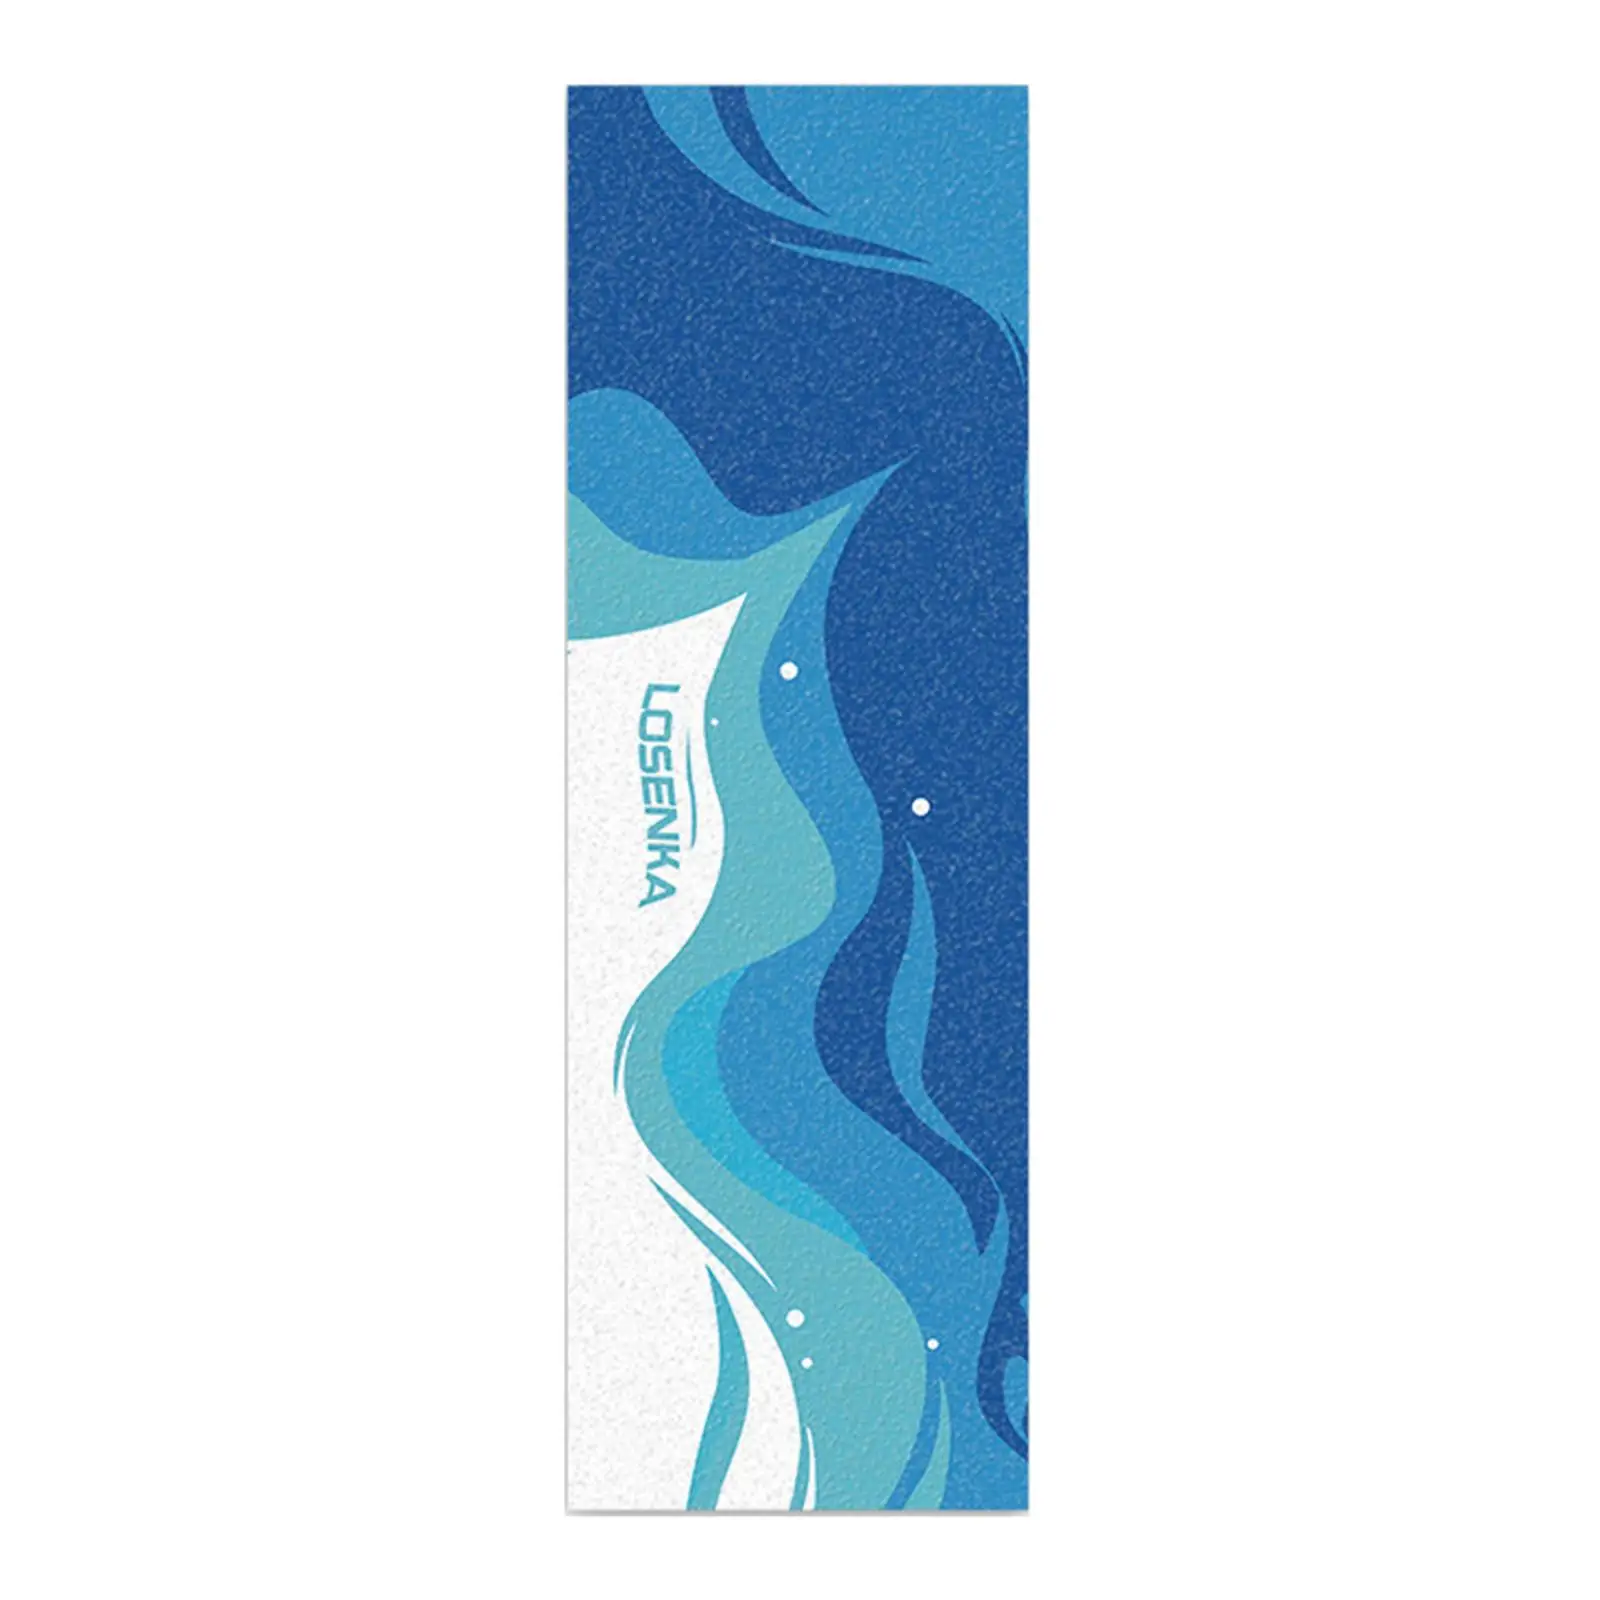 Longboard Tape Grip Decoration Anti Slip Skateboard Sandpaper